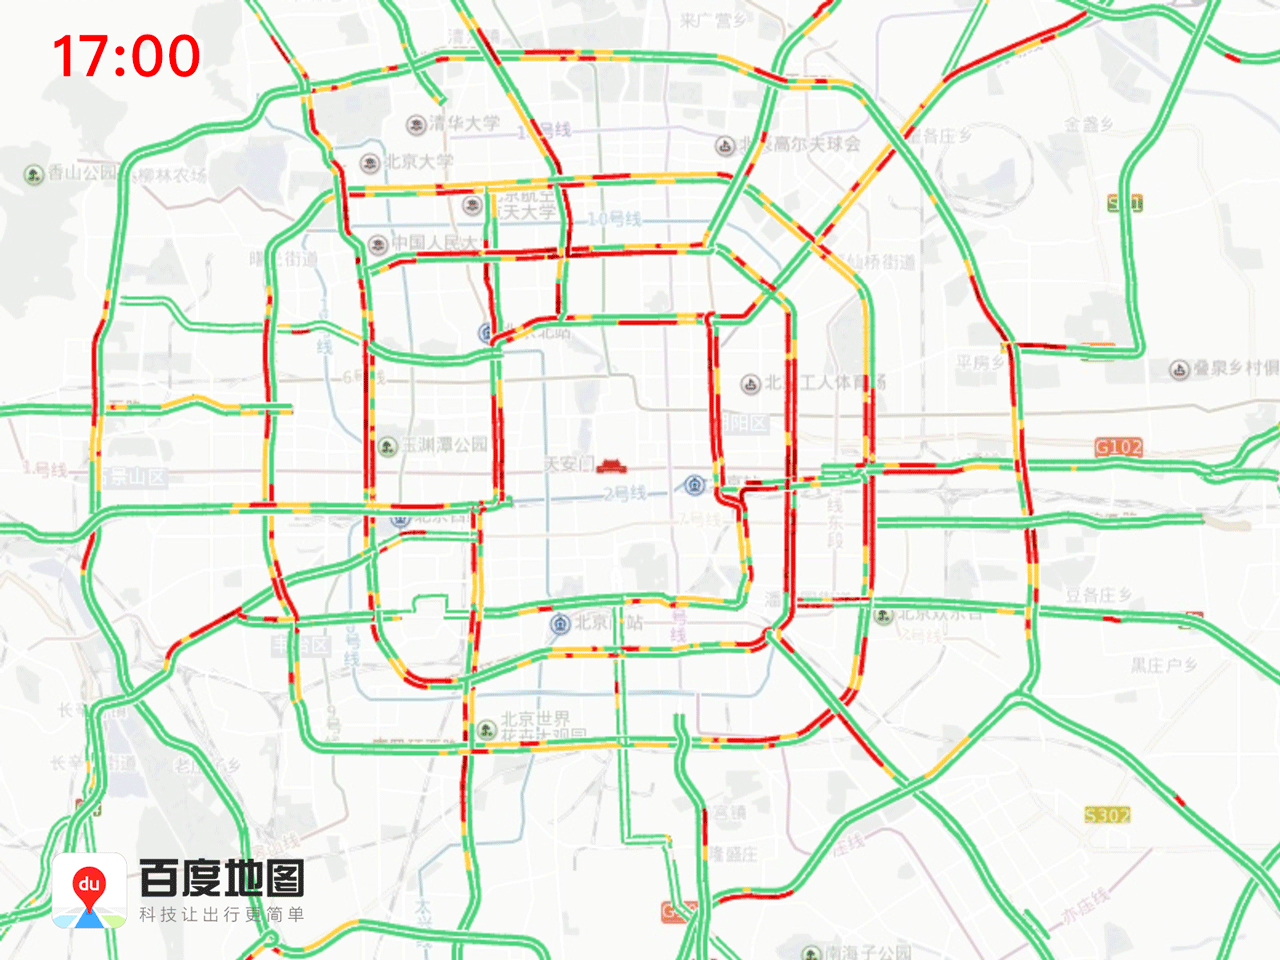 2019年3月16日至3月22日一周北京交通出行提示